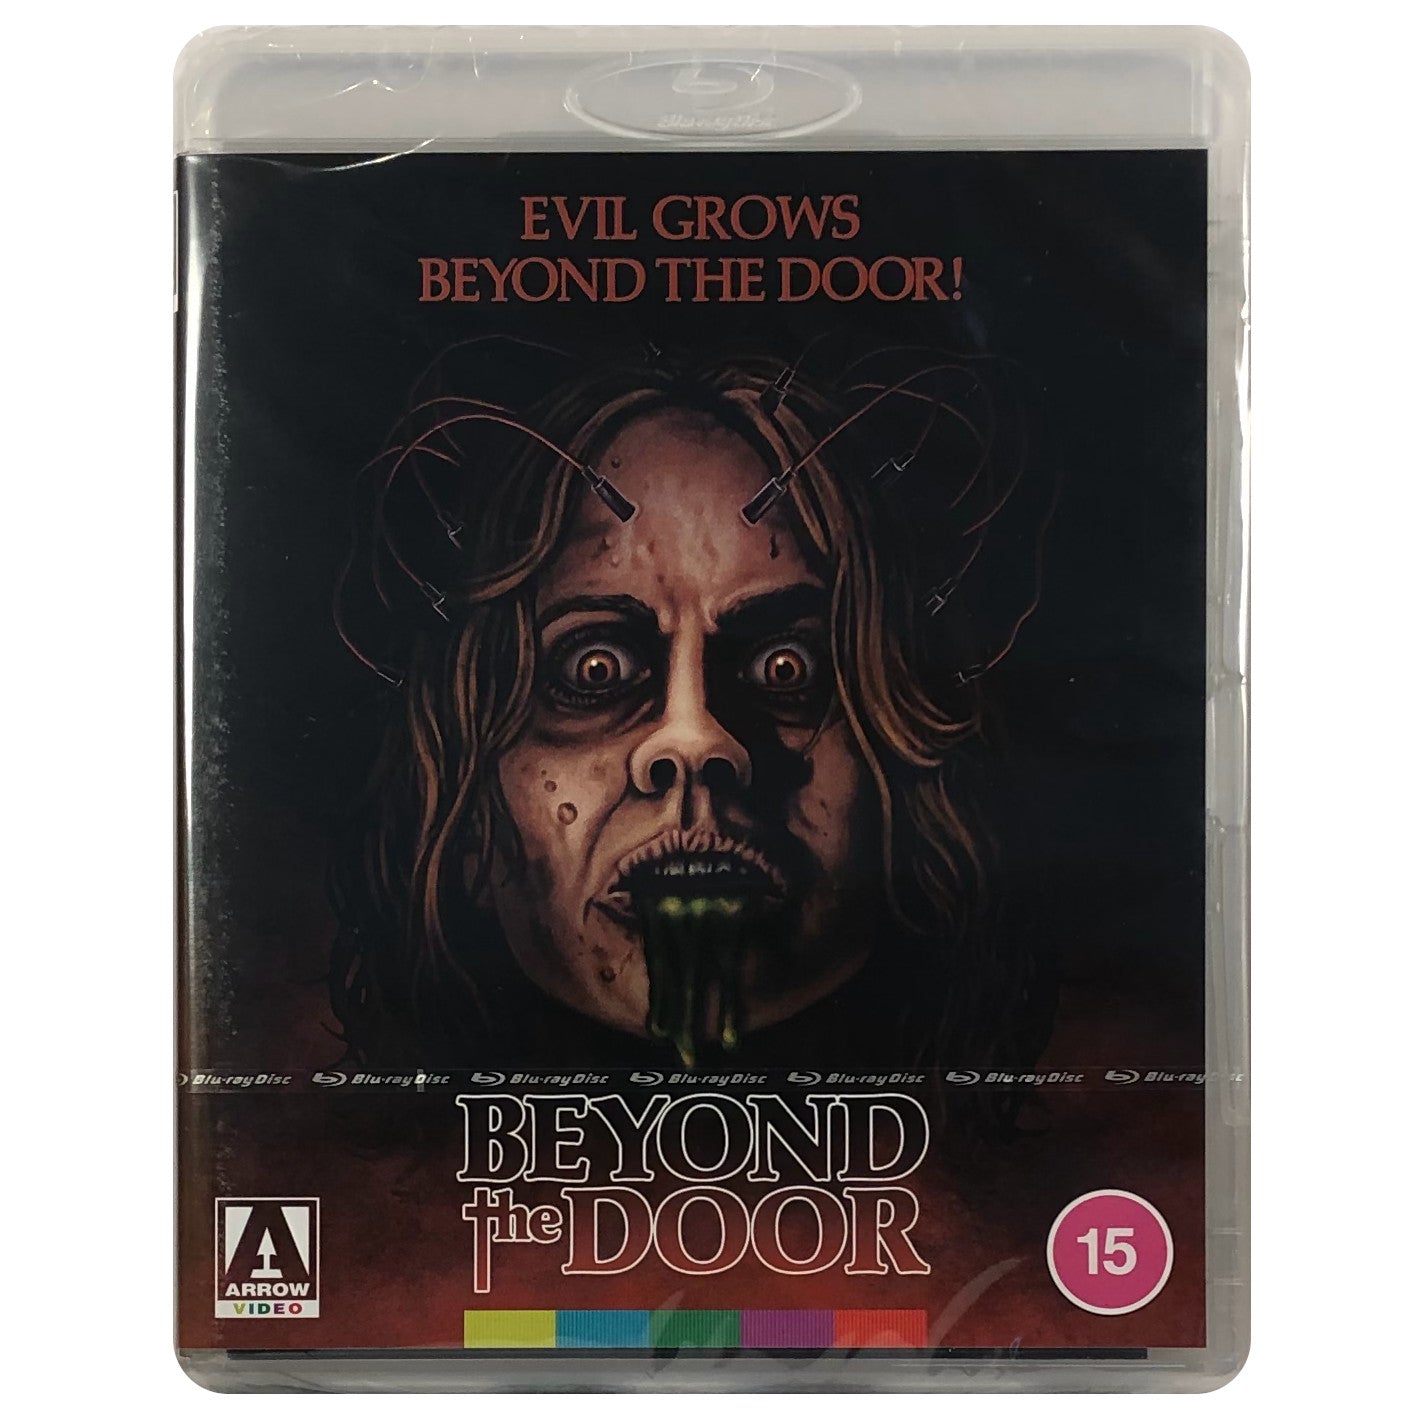 Beyond the Door Blu-Ray